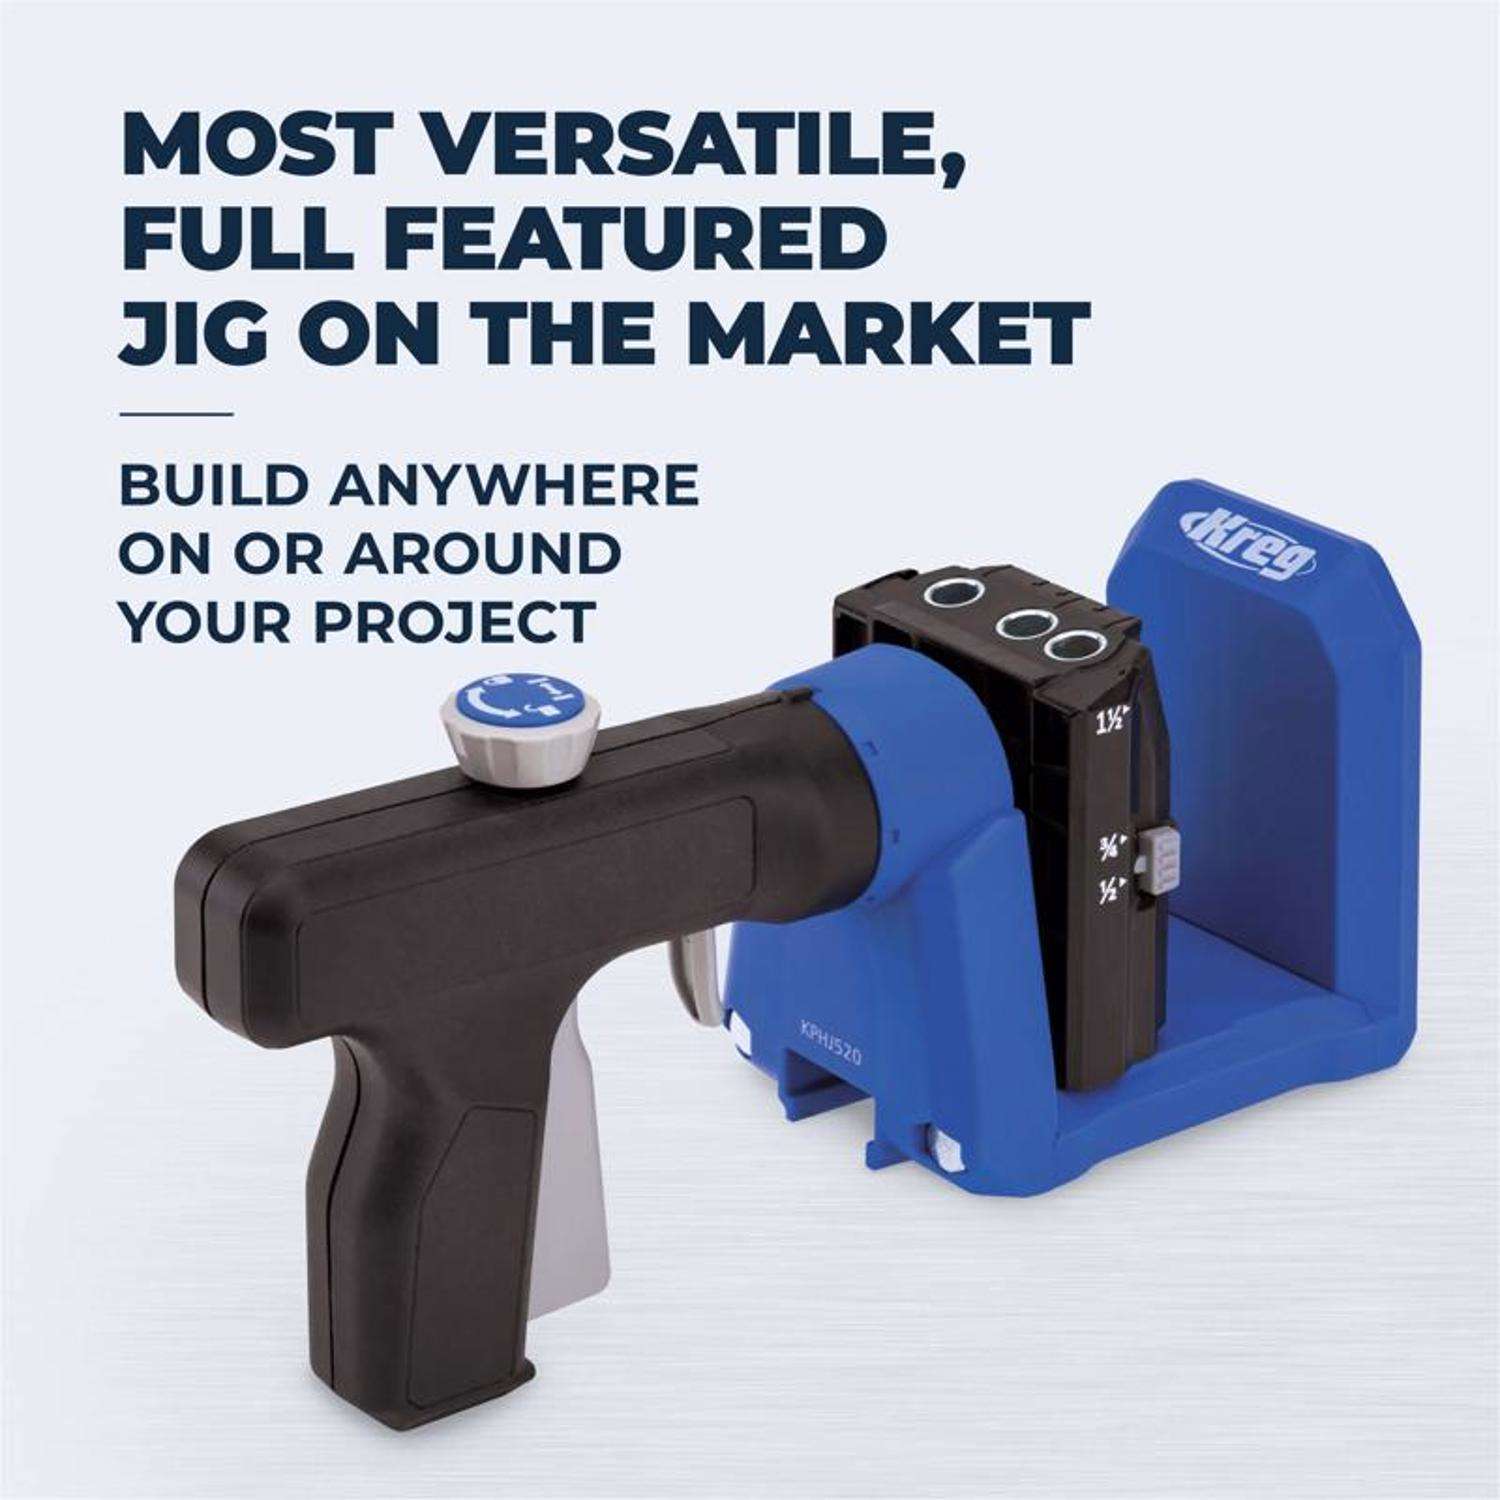 Kreg K4 Pocket Hole Jig - Adjustable, Versatile Jig for Strong